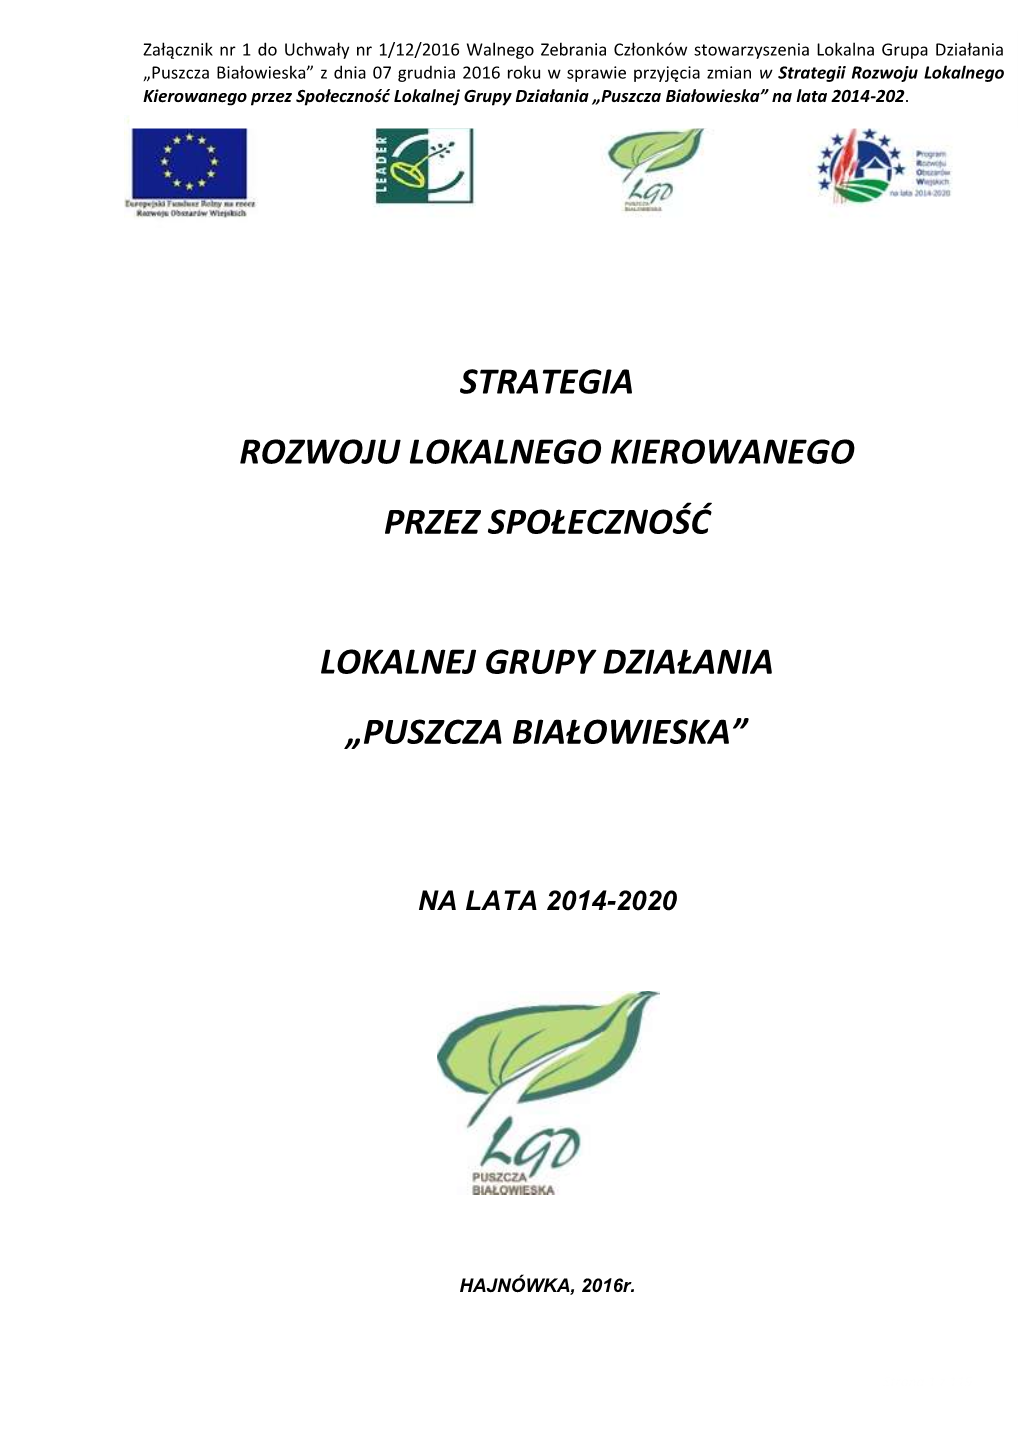 Strategia Rozwoju Lokalnego Kierowanego Przez Społeczność Lokalnej Grupy Działania „Puszcza Białowieska” Na Lata 2014-2020